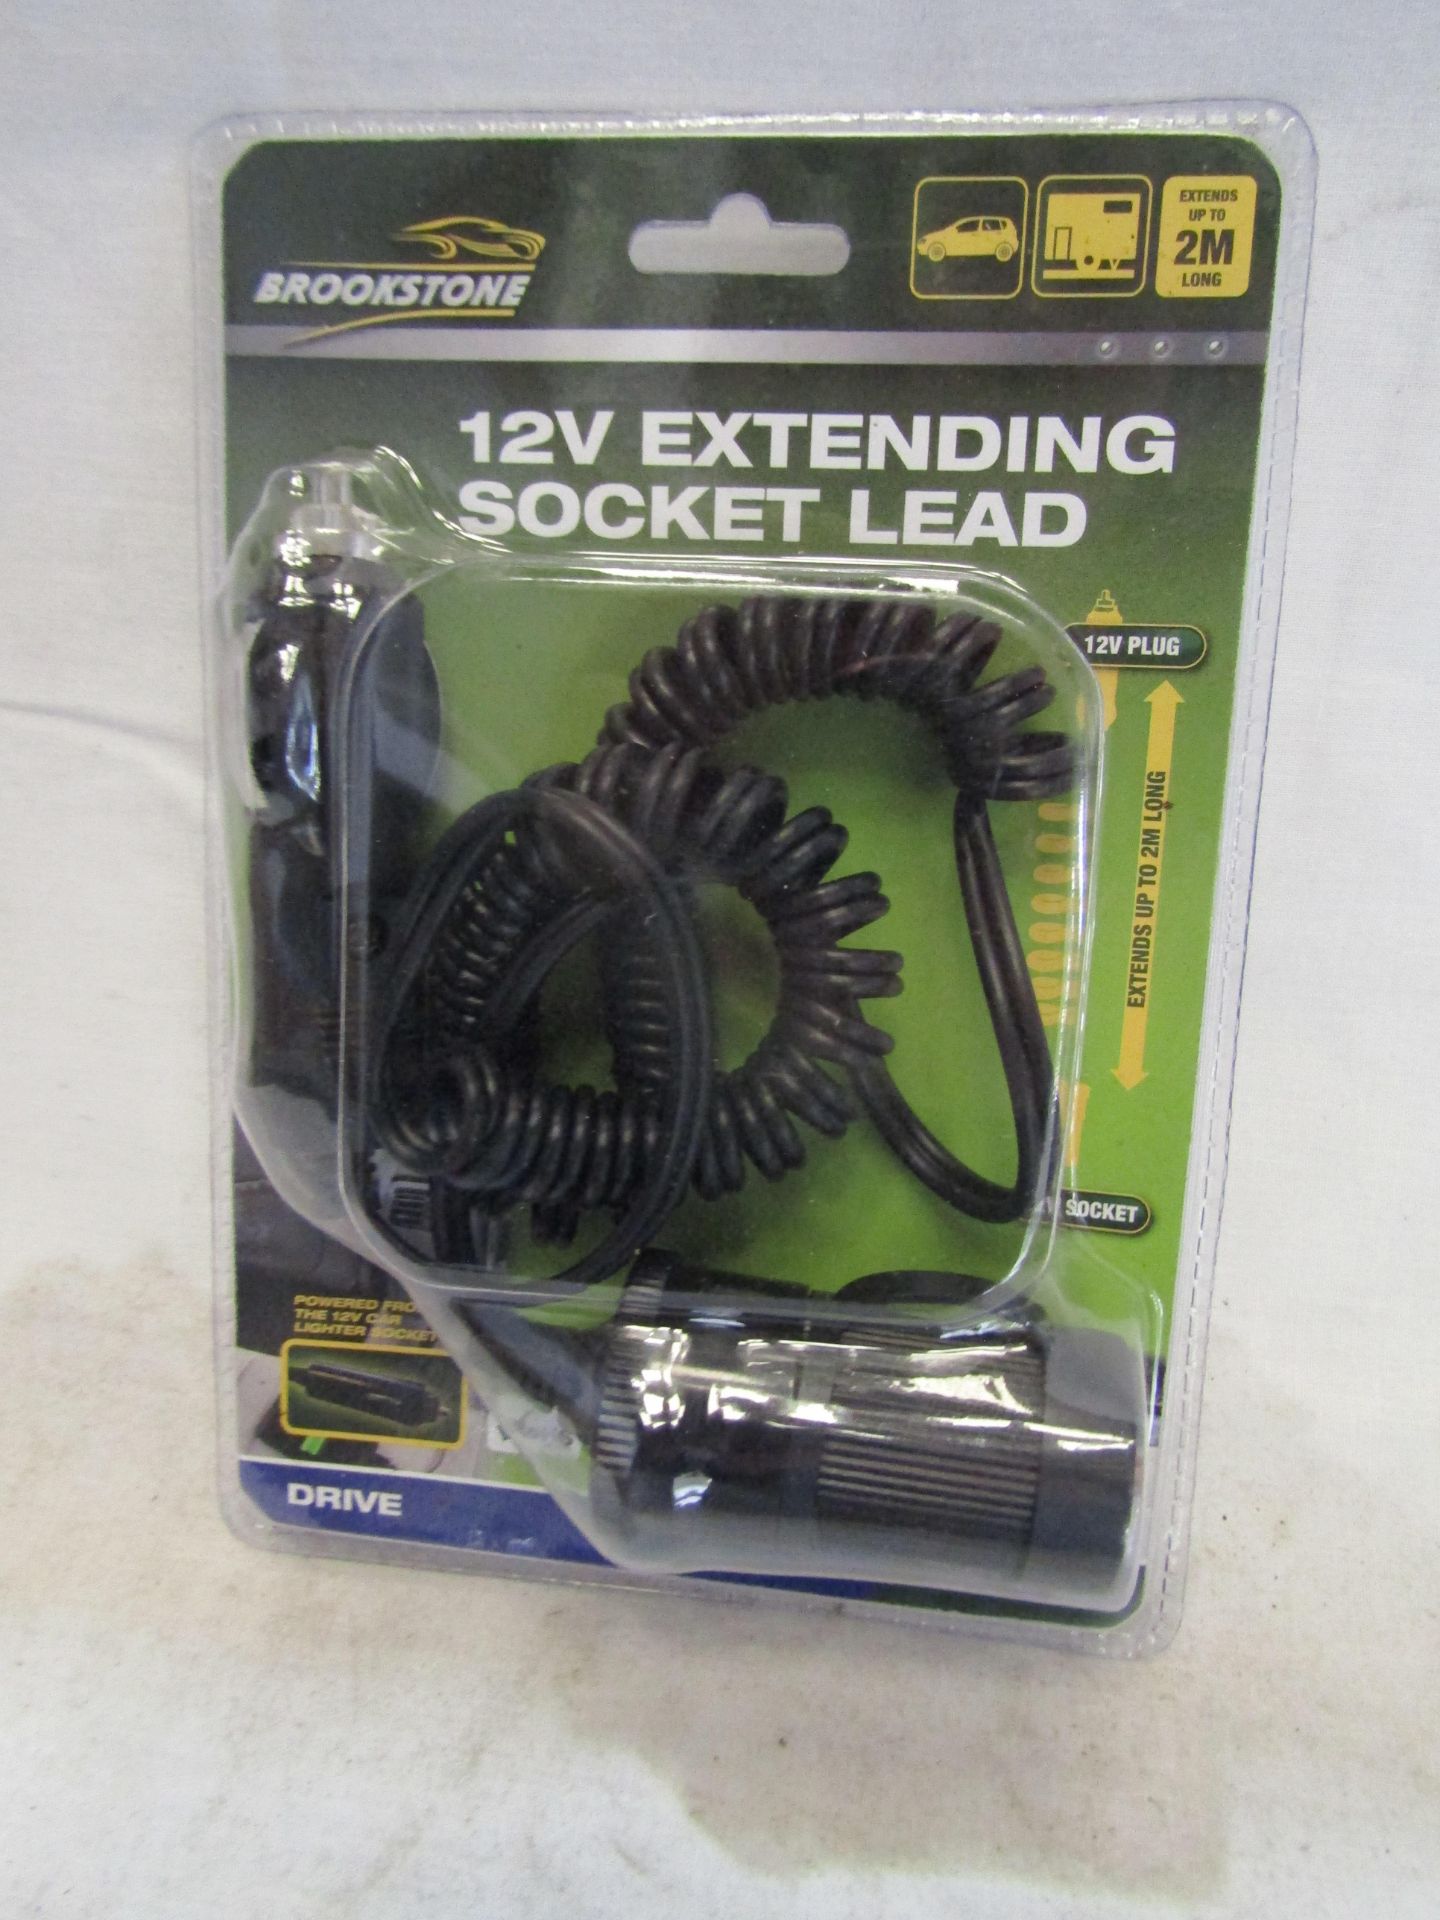 6 X 12V Extending Socket Leads new & Packaged